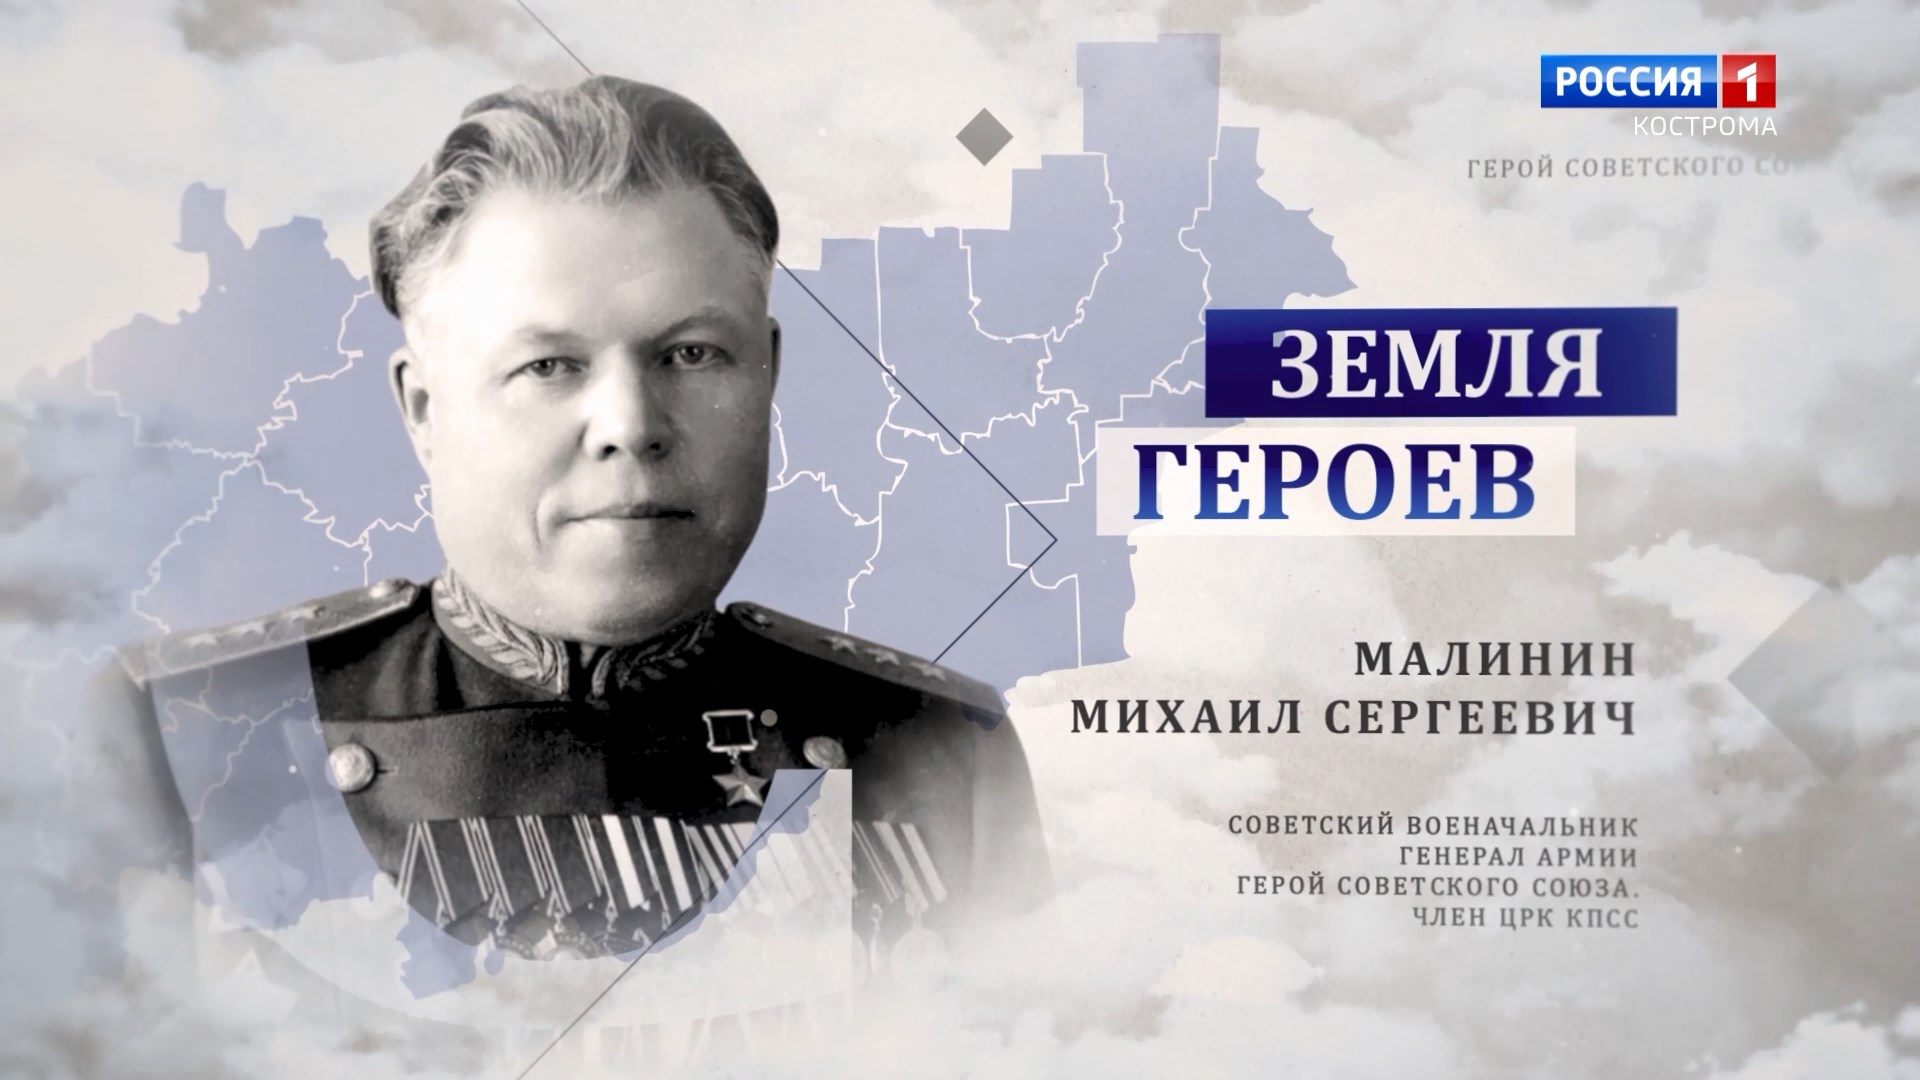 Земля героев: генерал-полковник Малинин